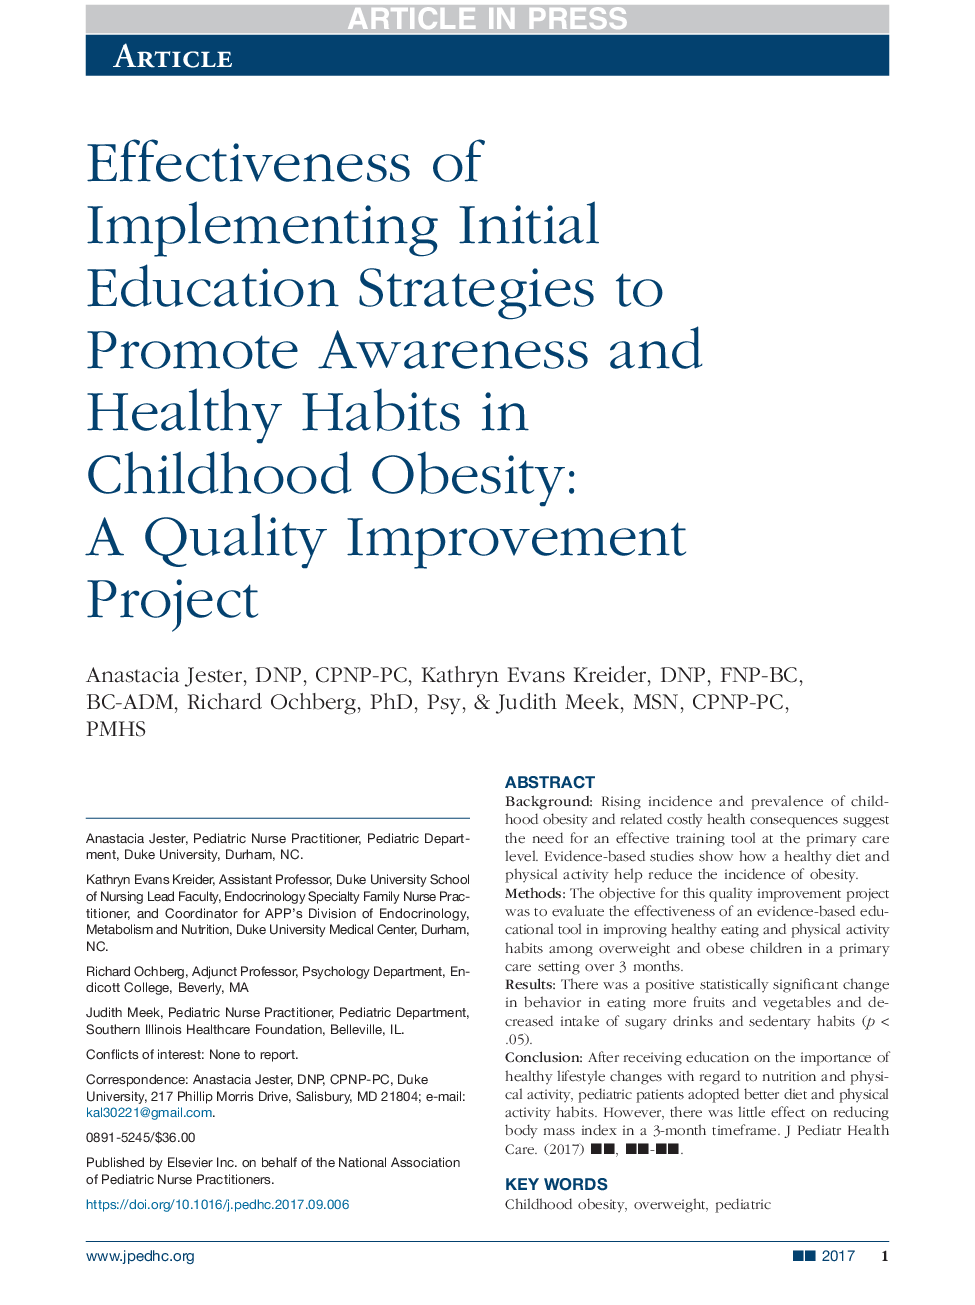 اثربخشی استراتژی های آموزش ابتدایی برای ارتقاء آگاهی و عادات سالم در چاقی کودکان: یک پروژه بهبود کیفیت 